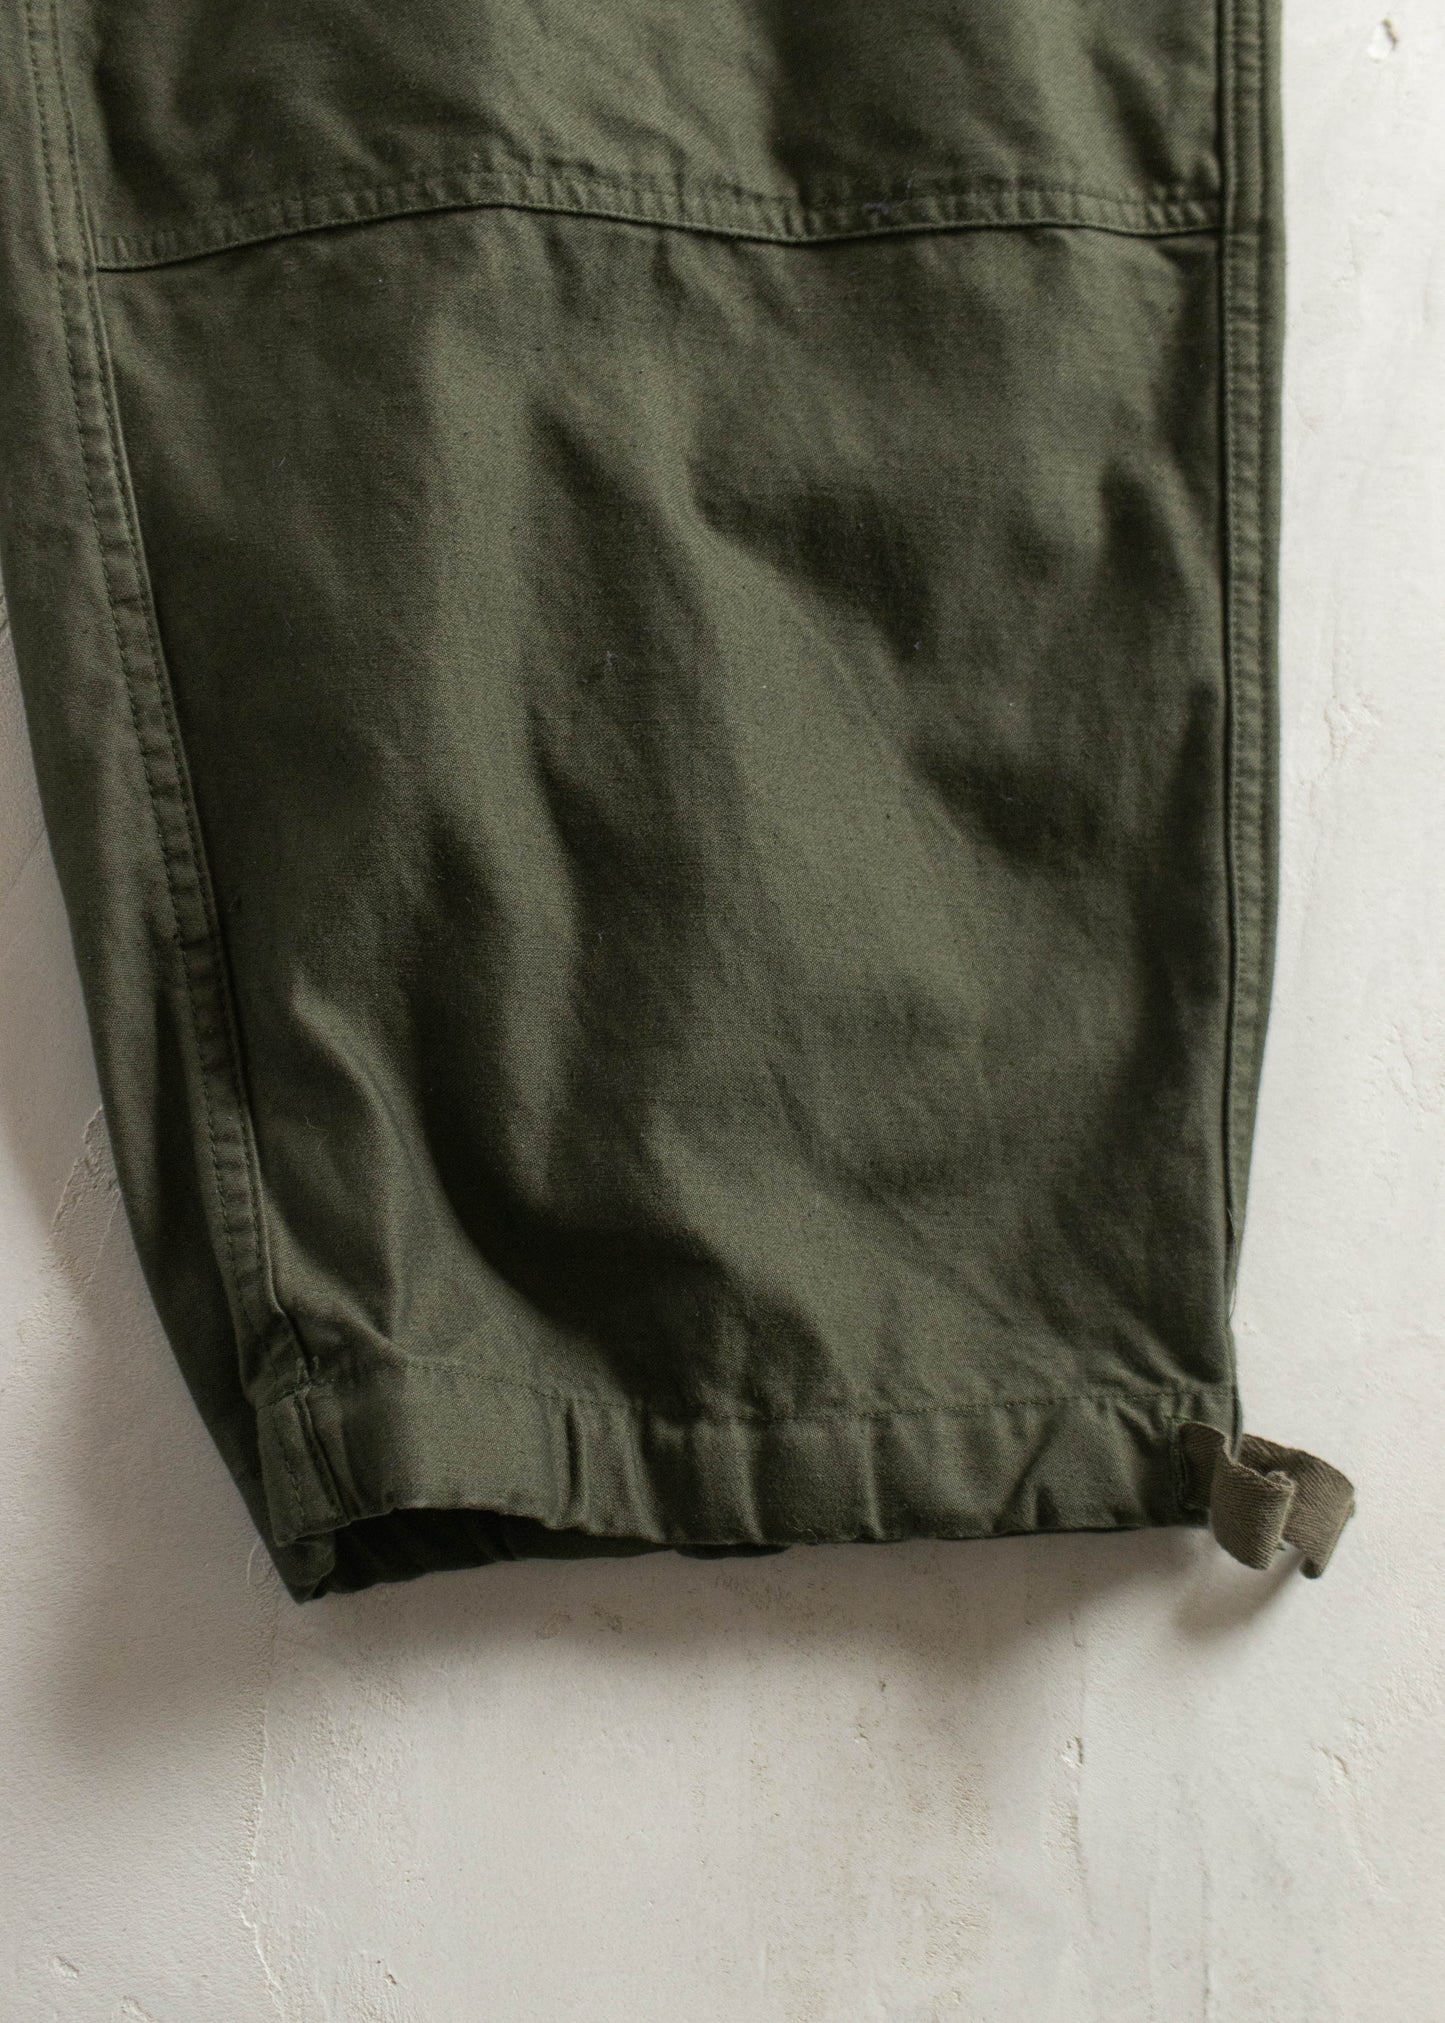 Vintage 1980s Military Cargo Pants Size Women's 38 Men's 40